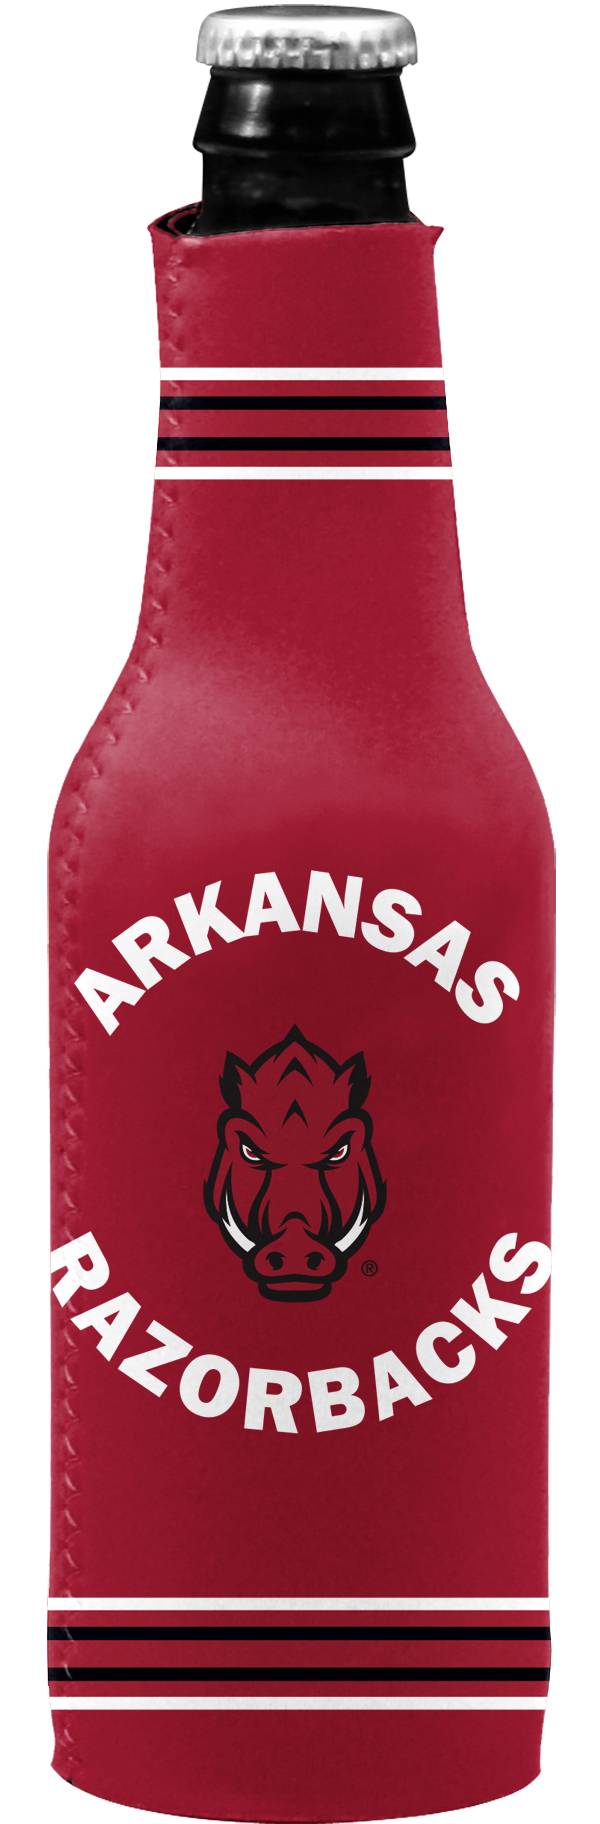 Arkansas Razorbacks Bottle Koozie product image